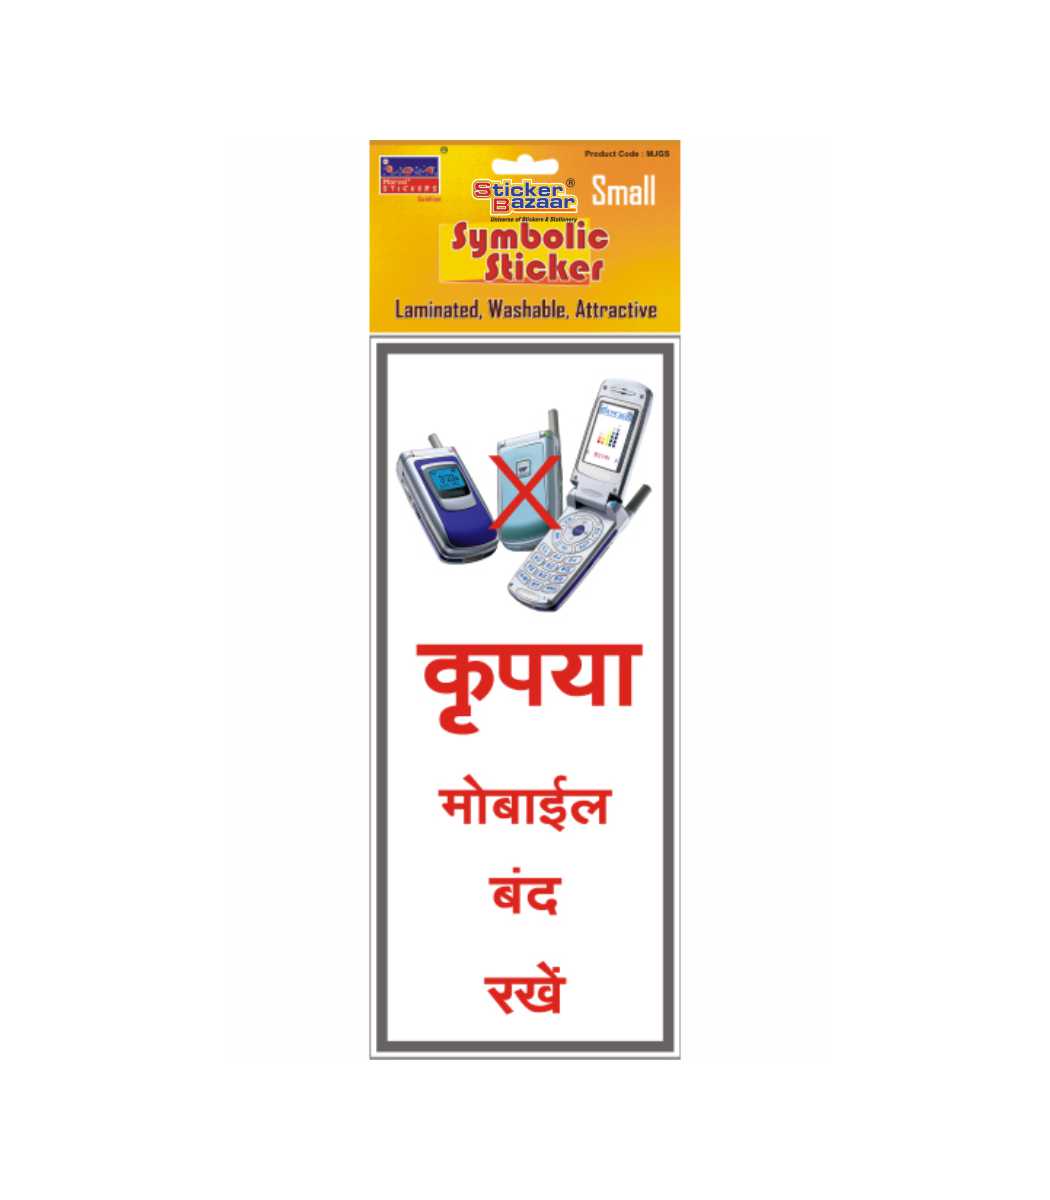 No Mobile Zone in Hindi 2 Small Symbolic Sticker